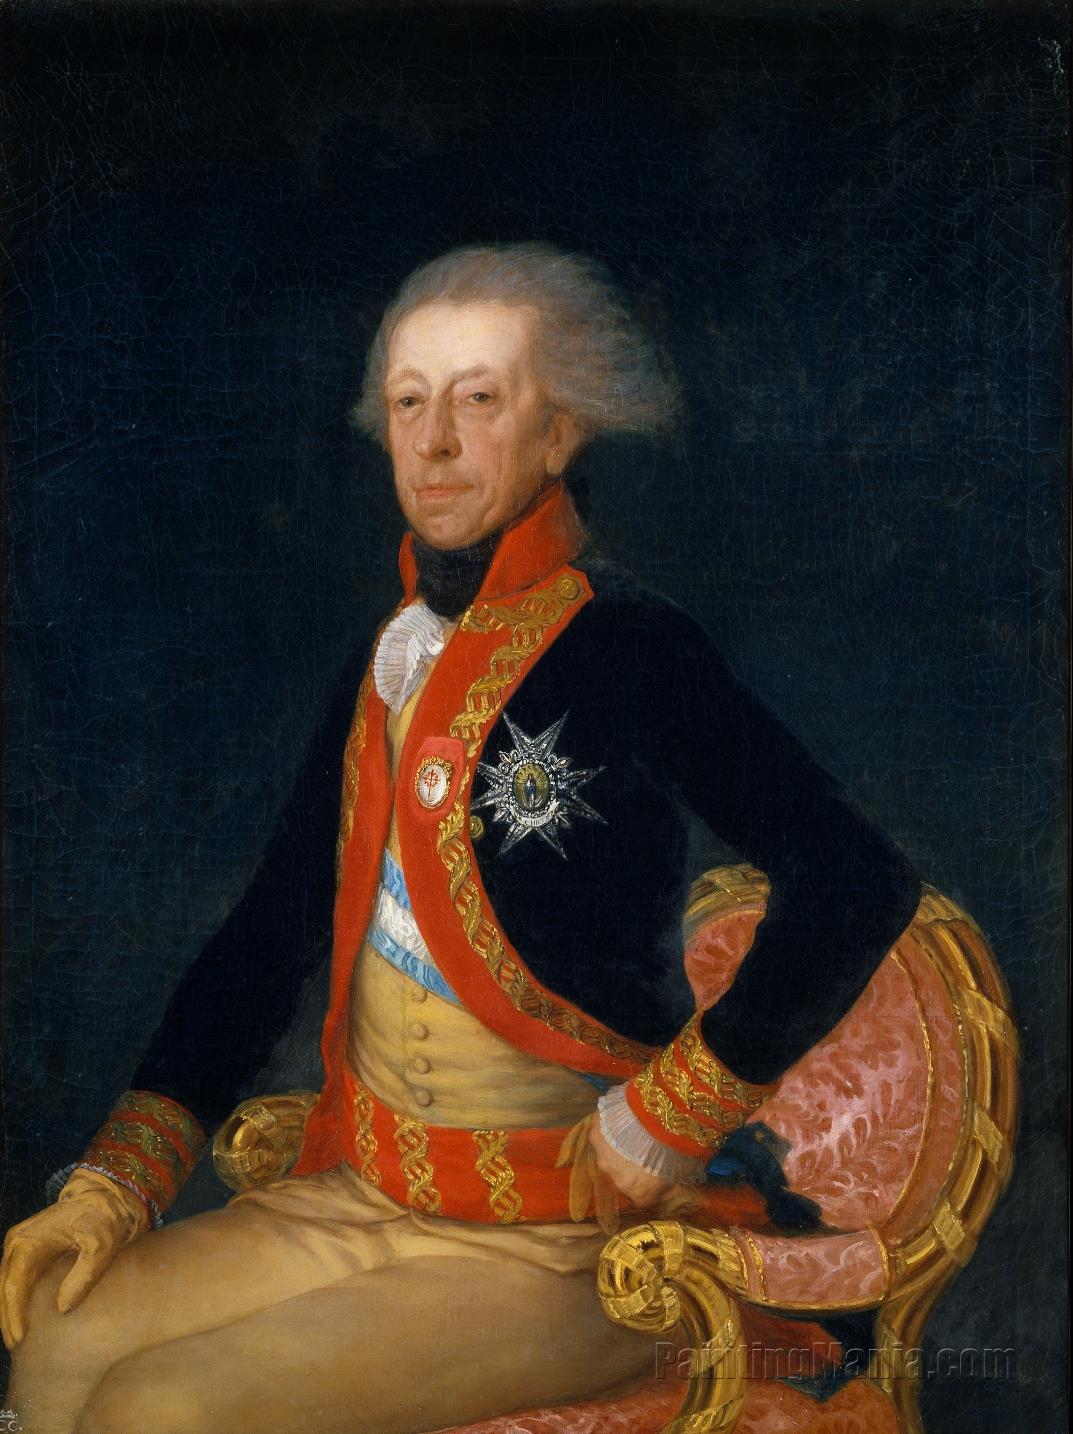 General Antonio Ricardos